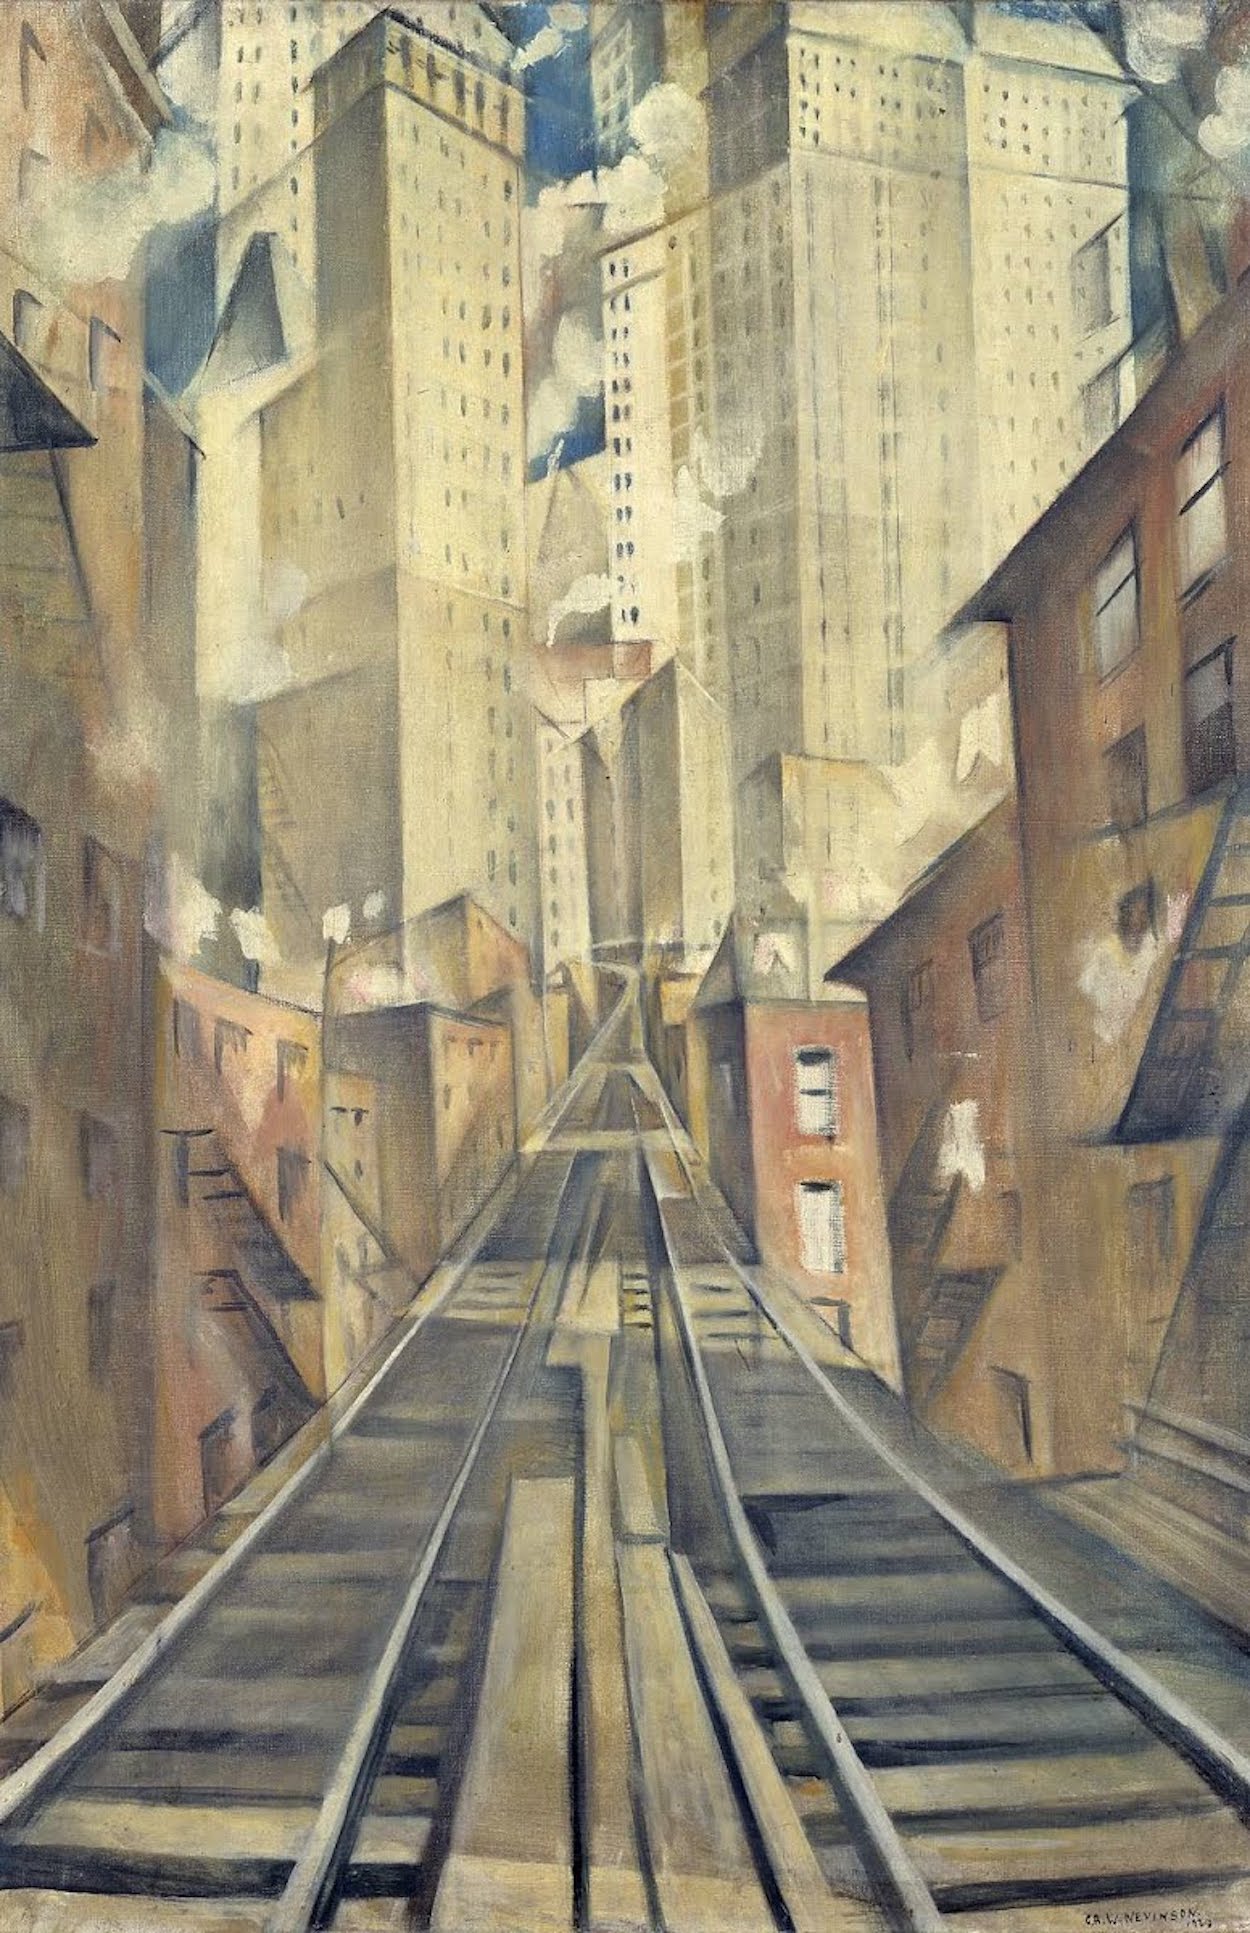 魂なき街の魂 by Christopher R. W. Nevinson - 1920年 - 91.5 x 60.8 cm 